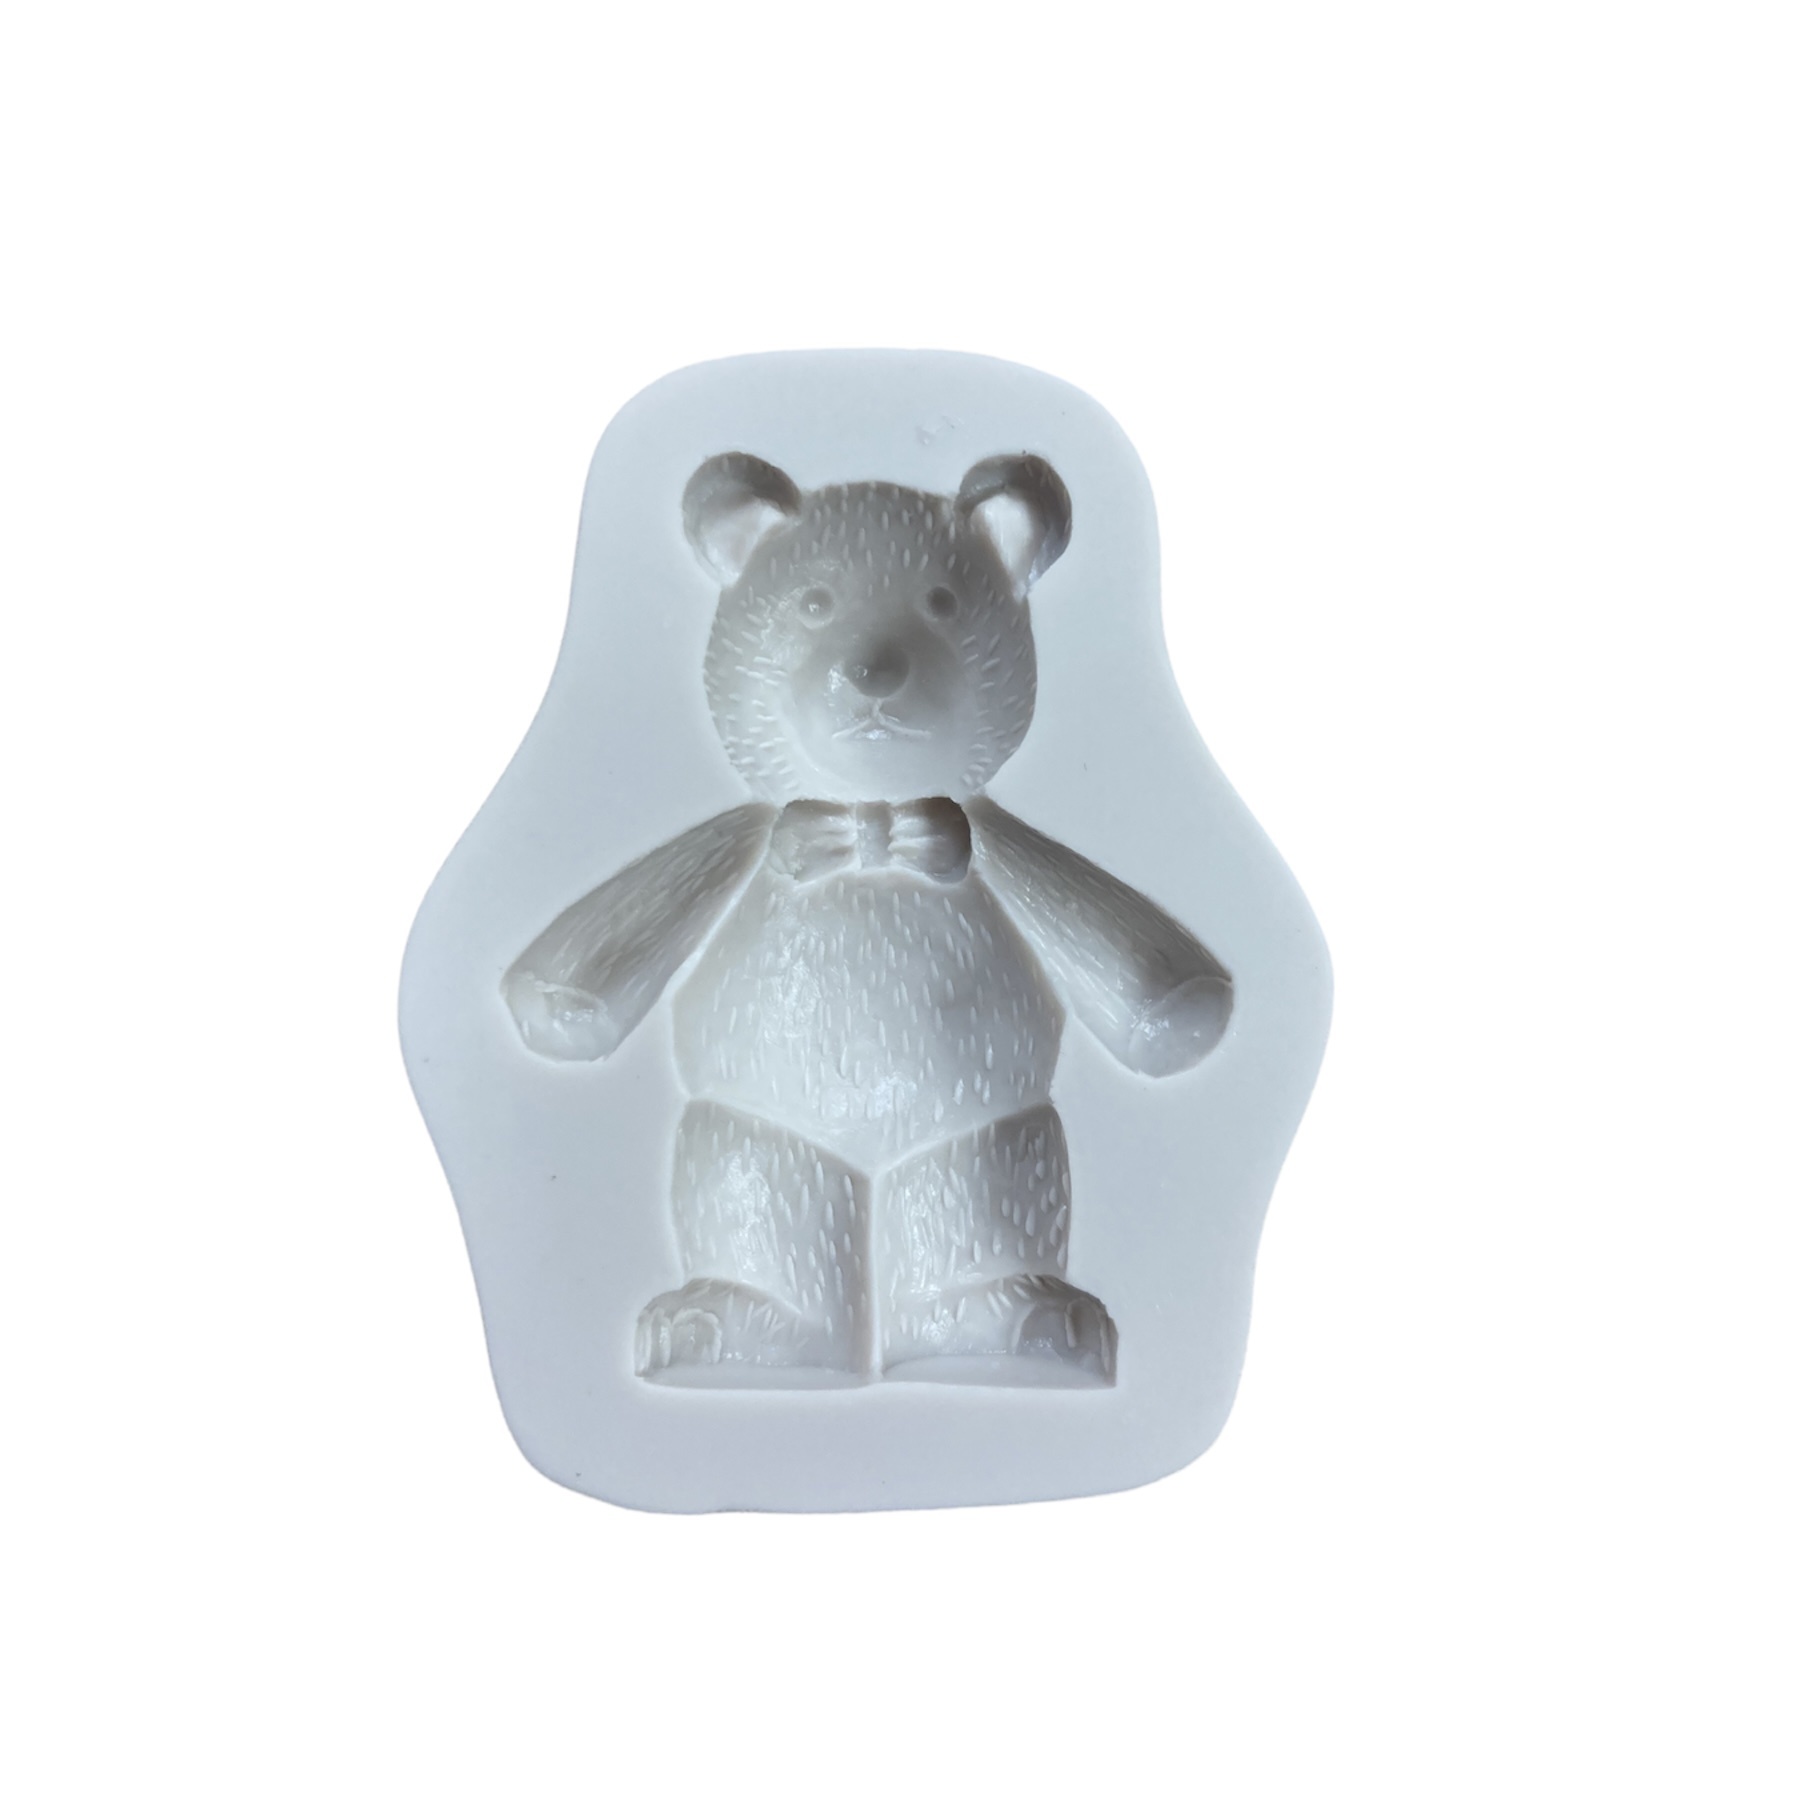 Cute Teddy Bear Silicone Mold